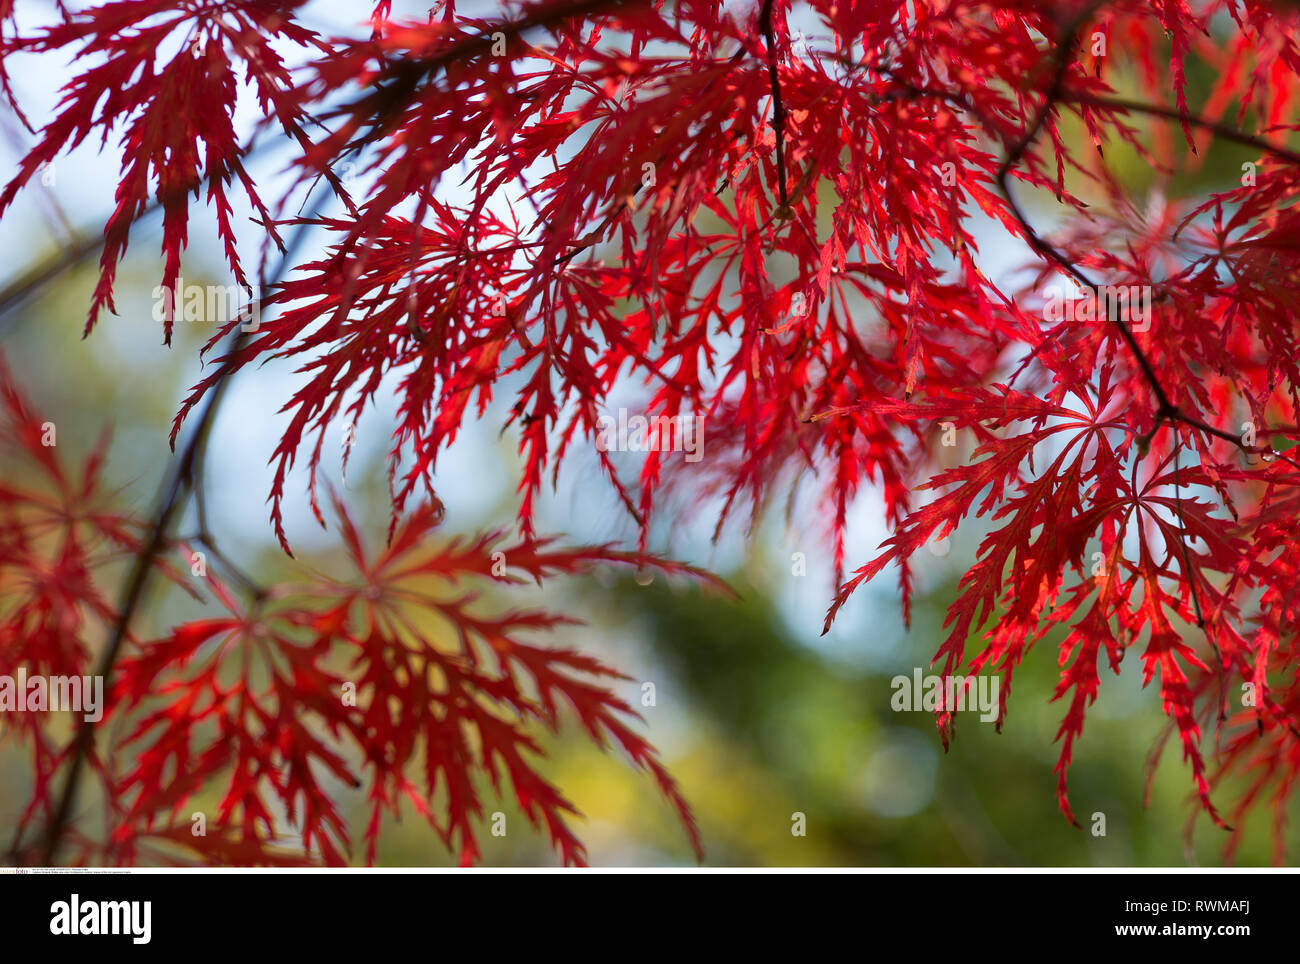 La botanica, foglie di rosso acero giapponese, attenzione! Per Greetingcard-Use / Postcard-Use nei Paesi di lingua tedesca talune restrizioni possono applicare Foto Stock